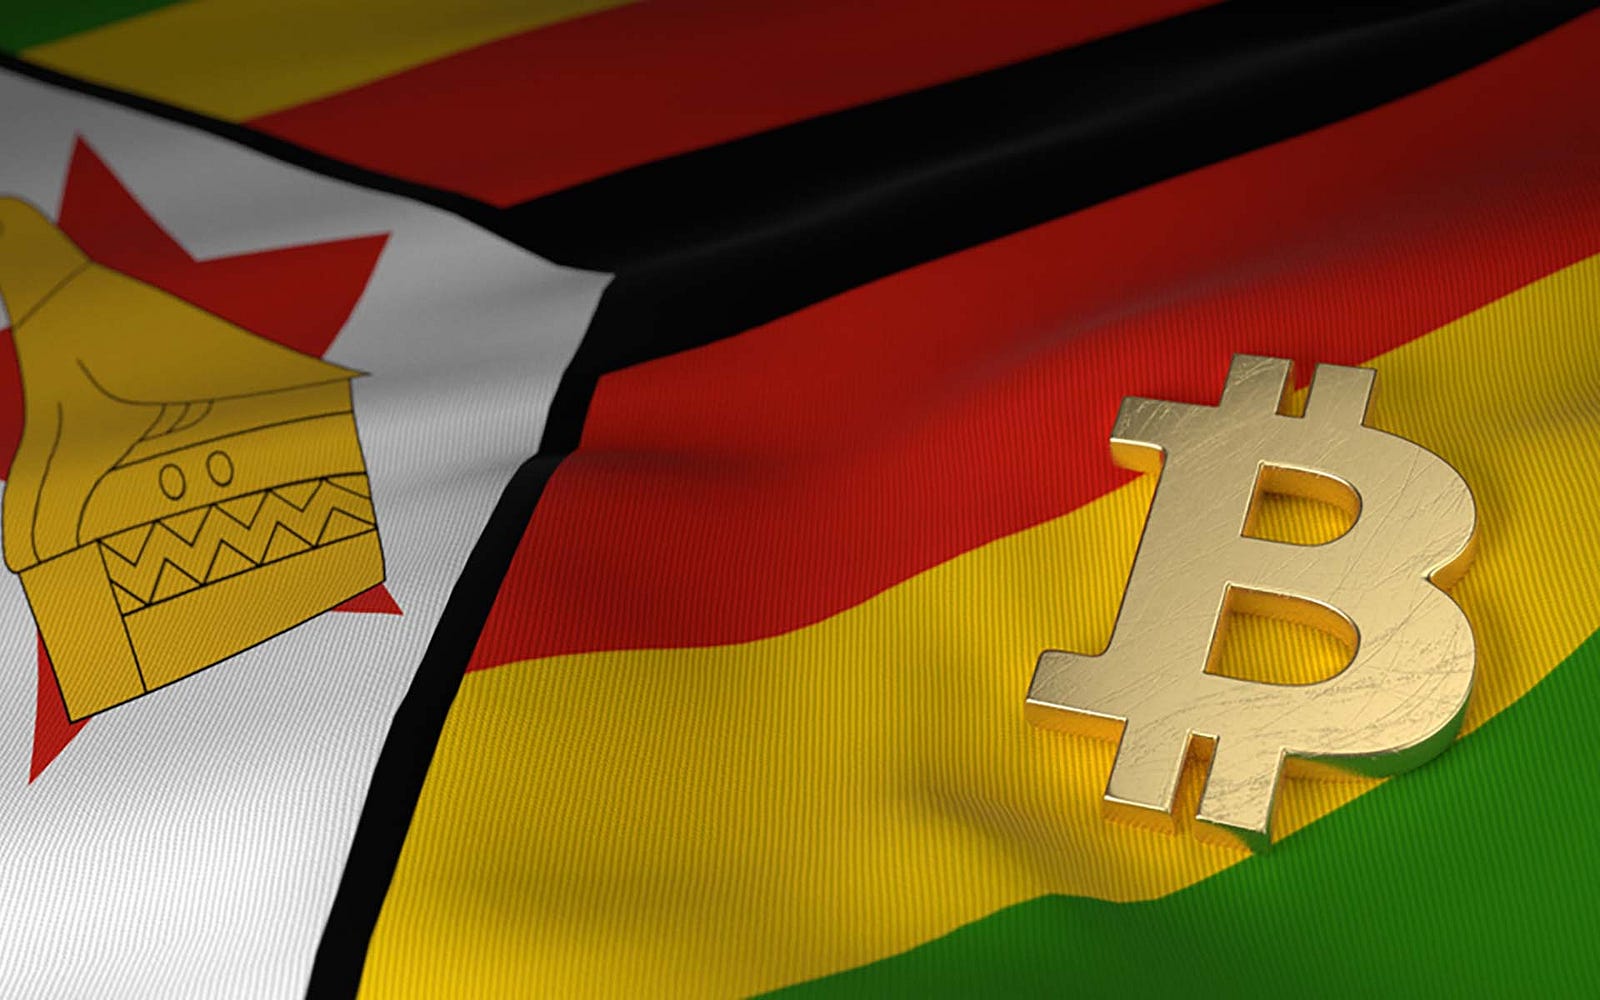 zimbabwe bitcoin price